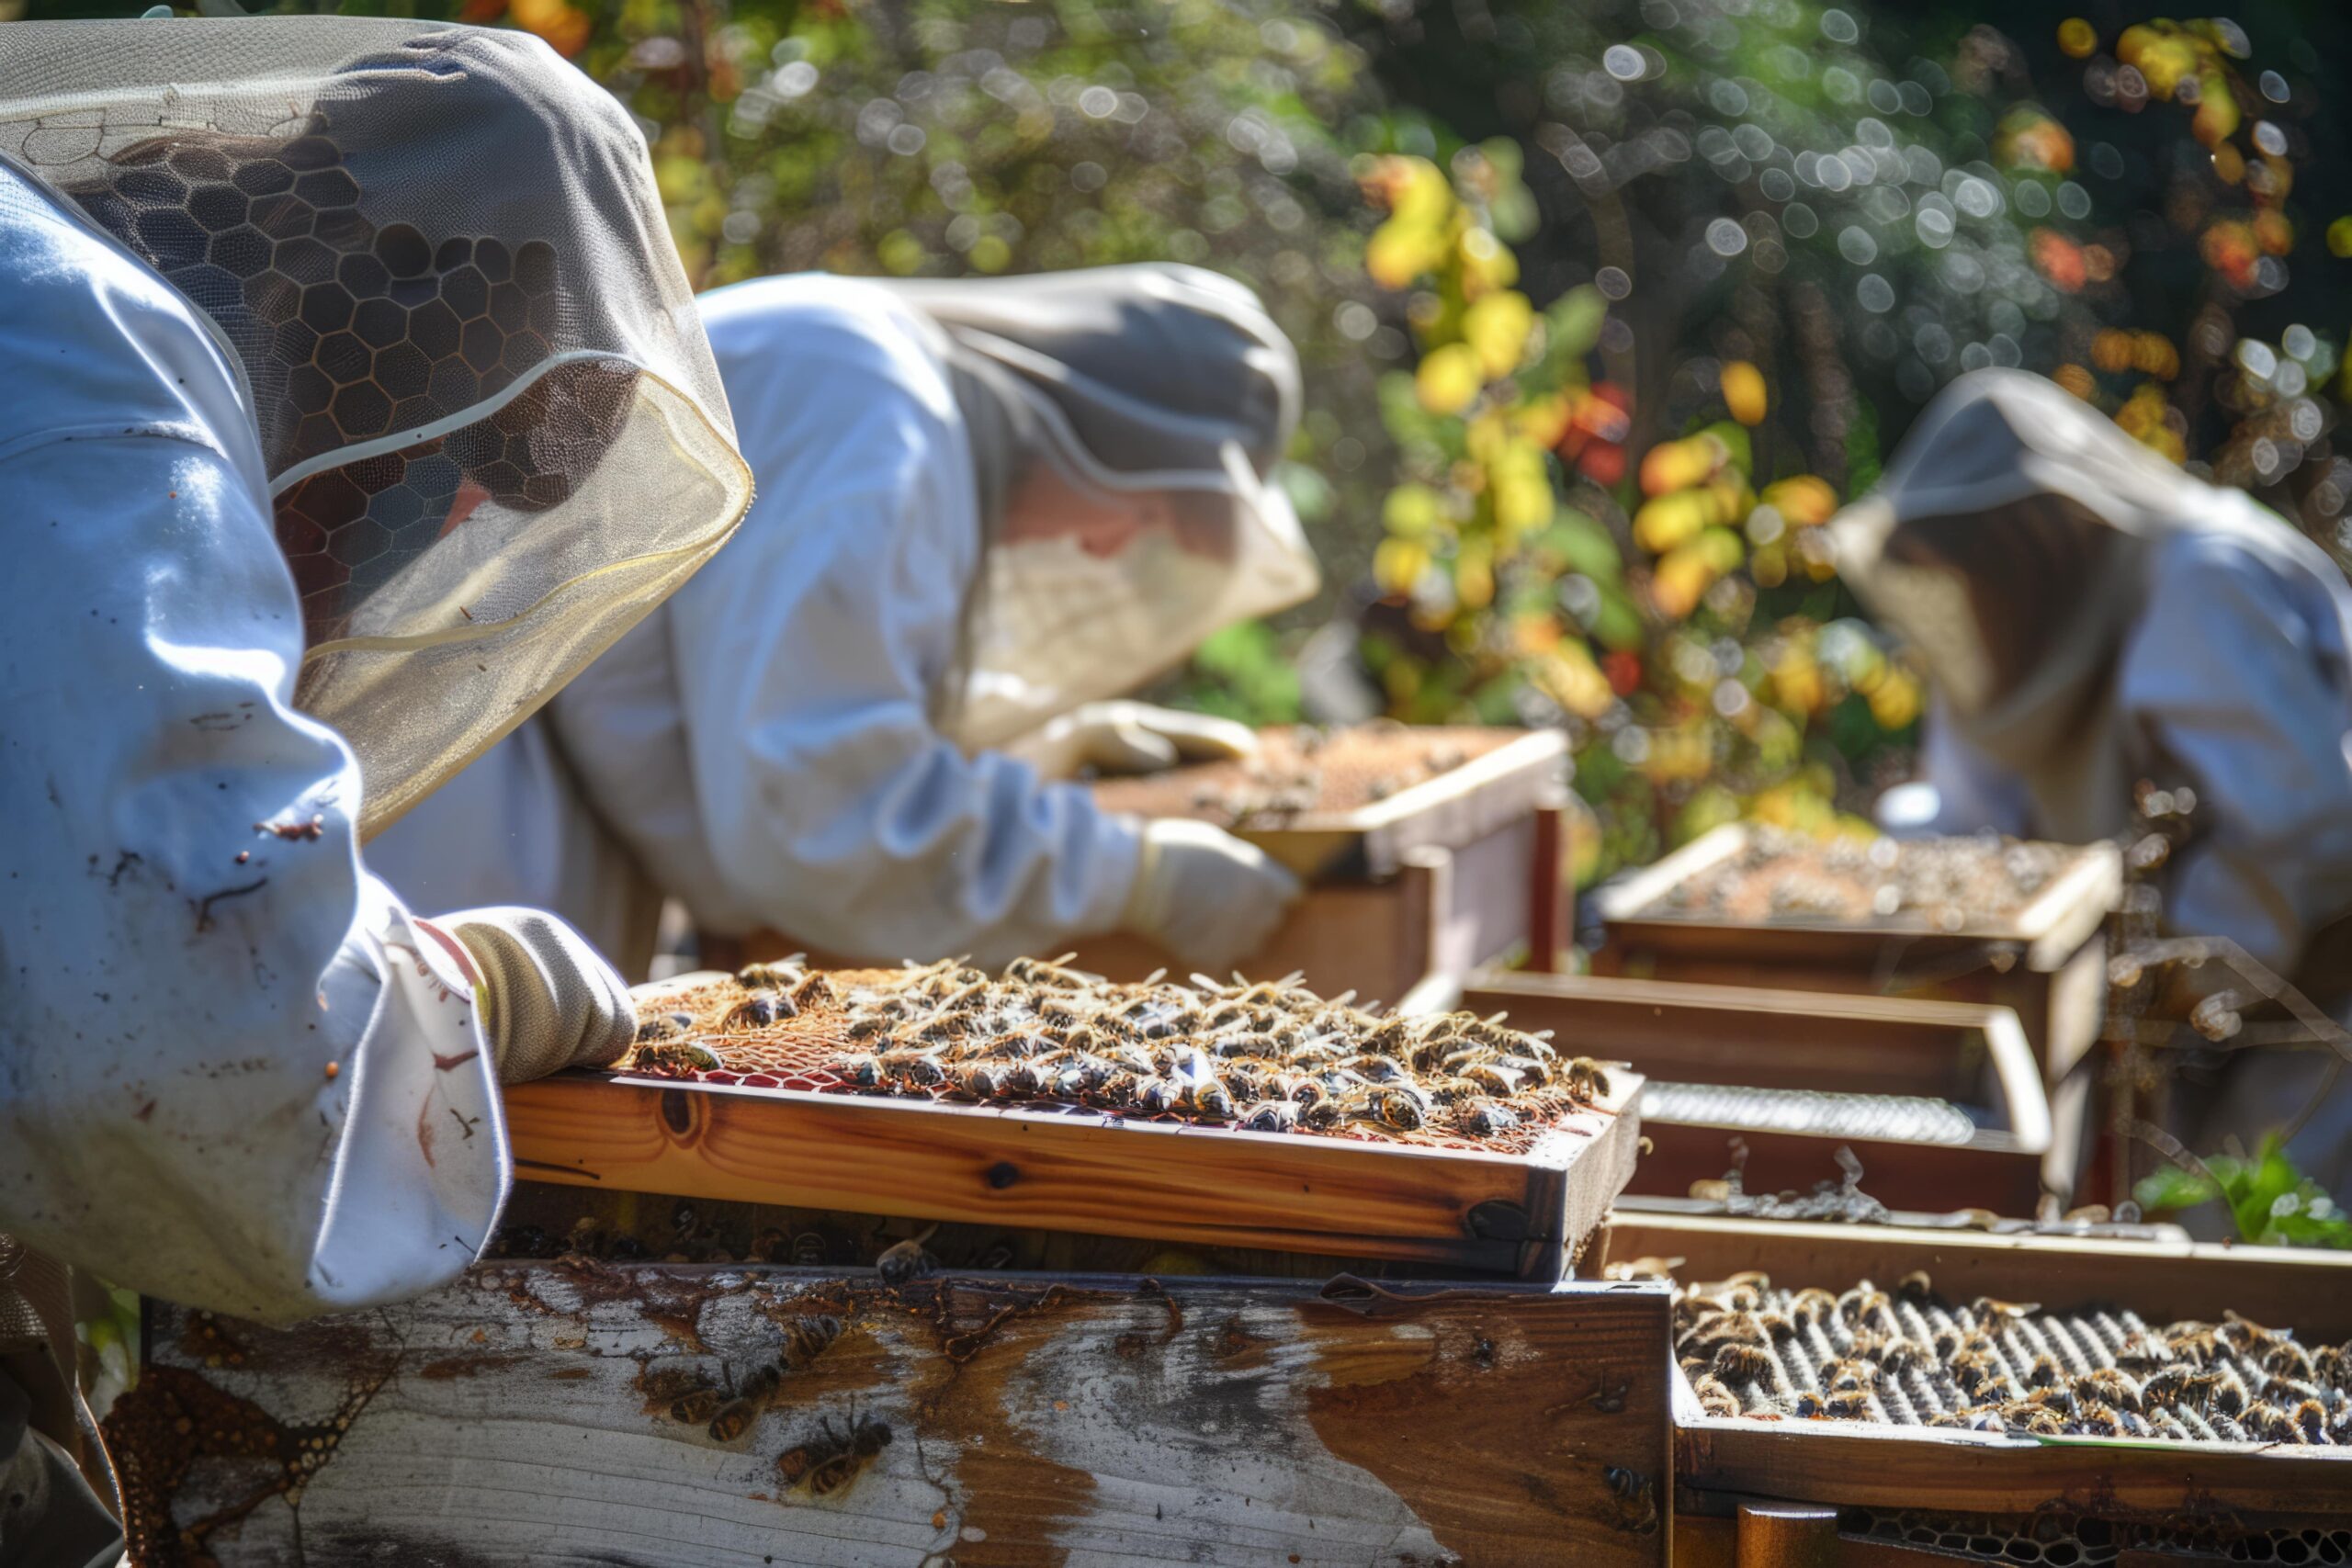 Comment démarrer une entreprise d’apiculture